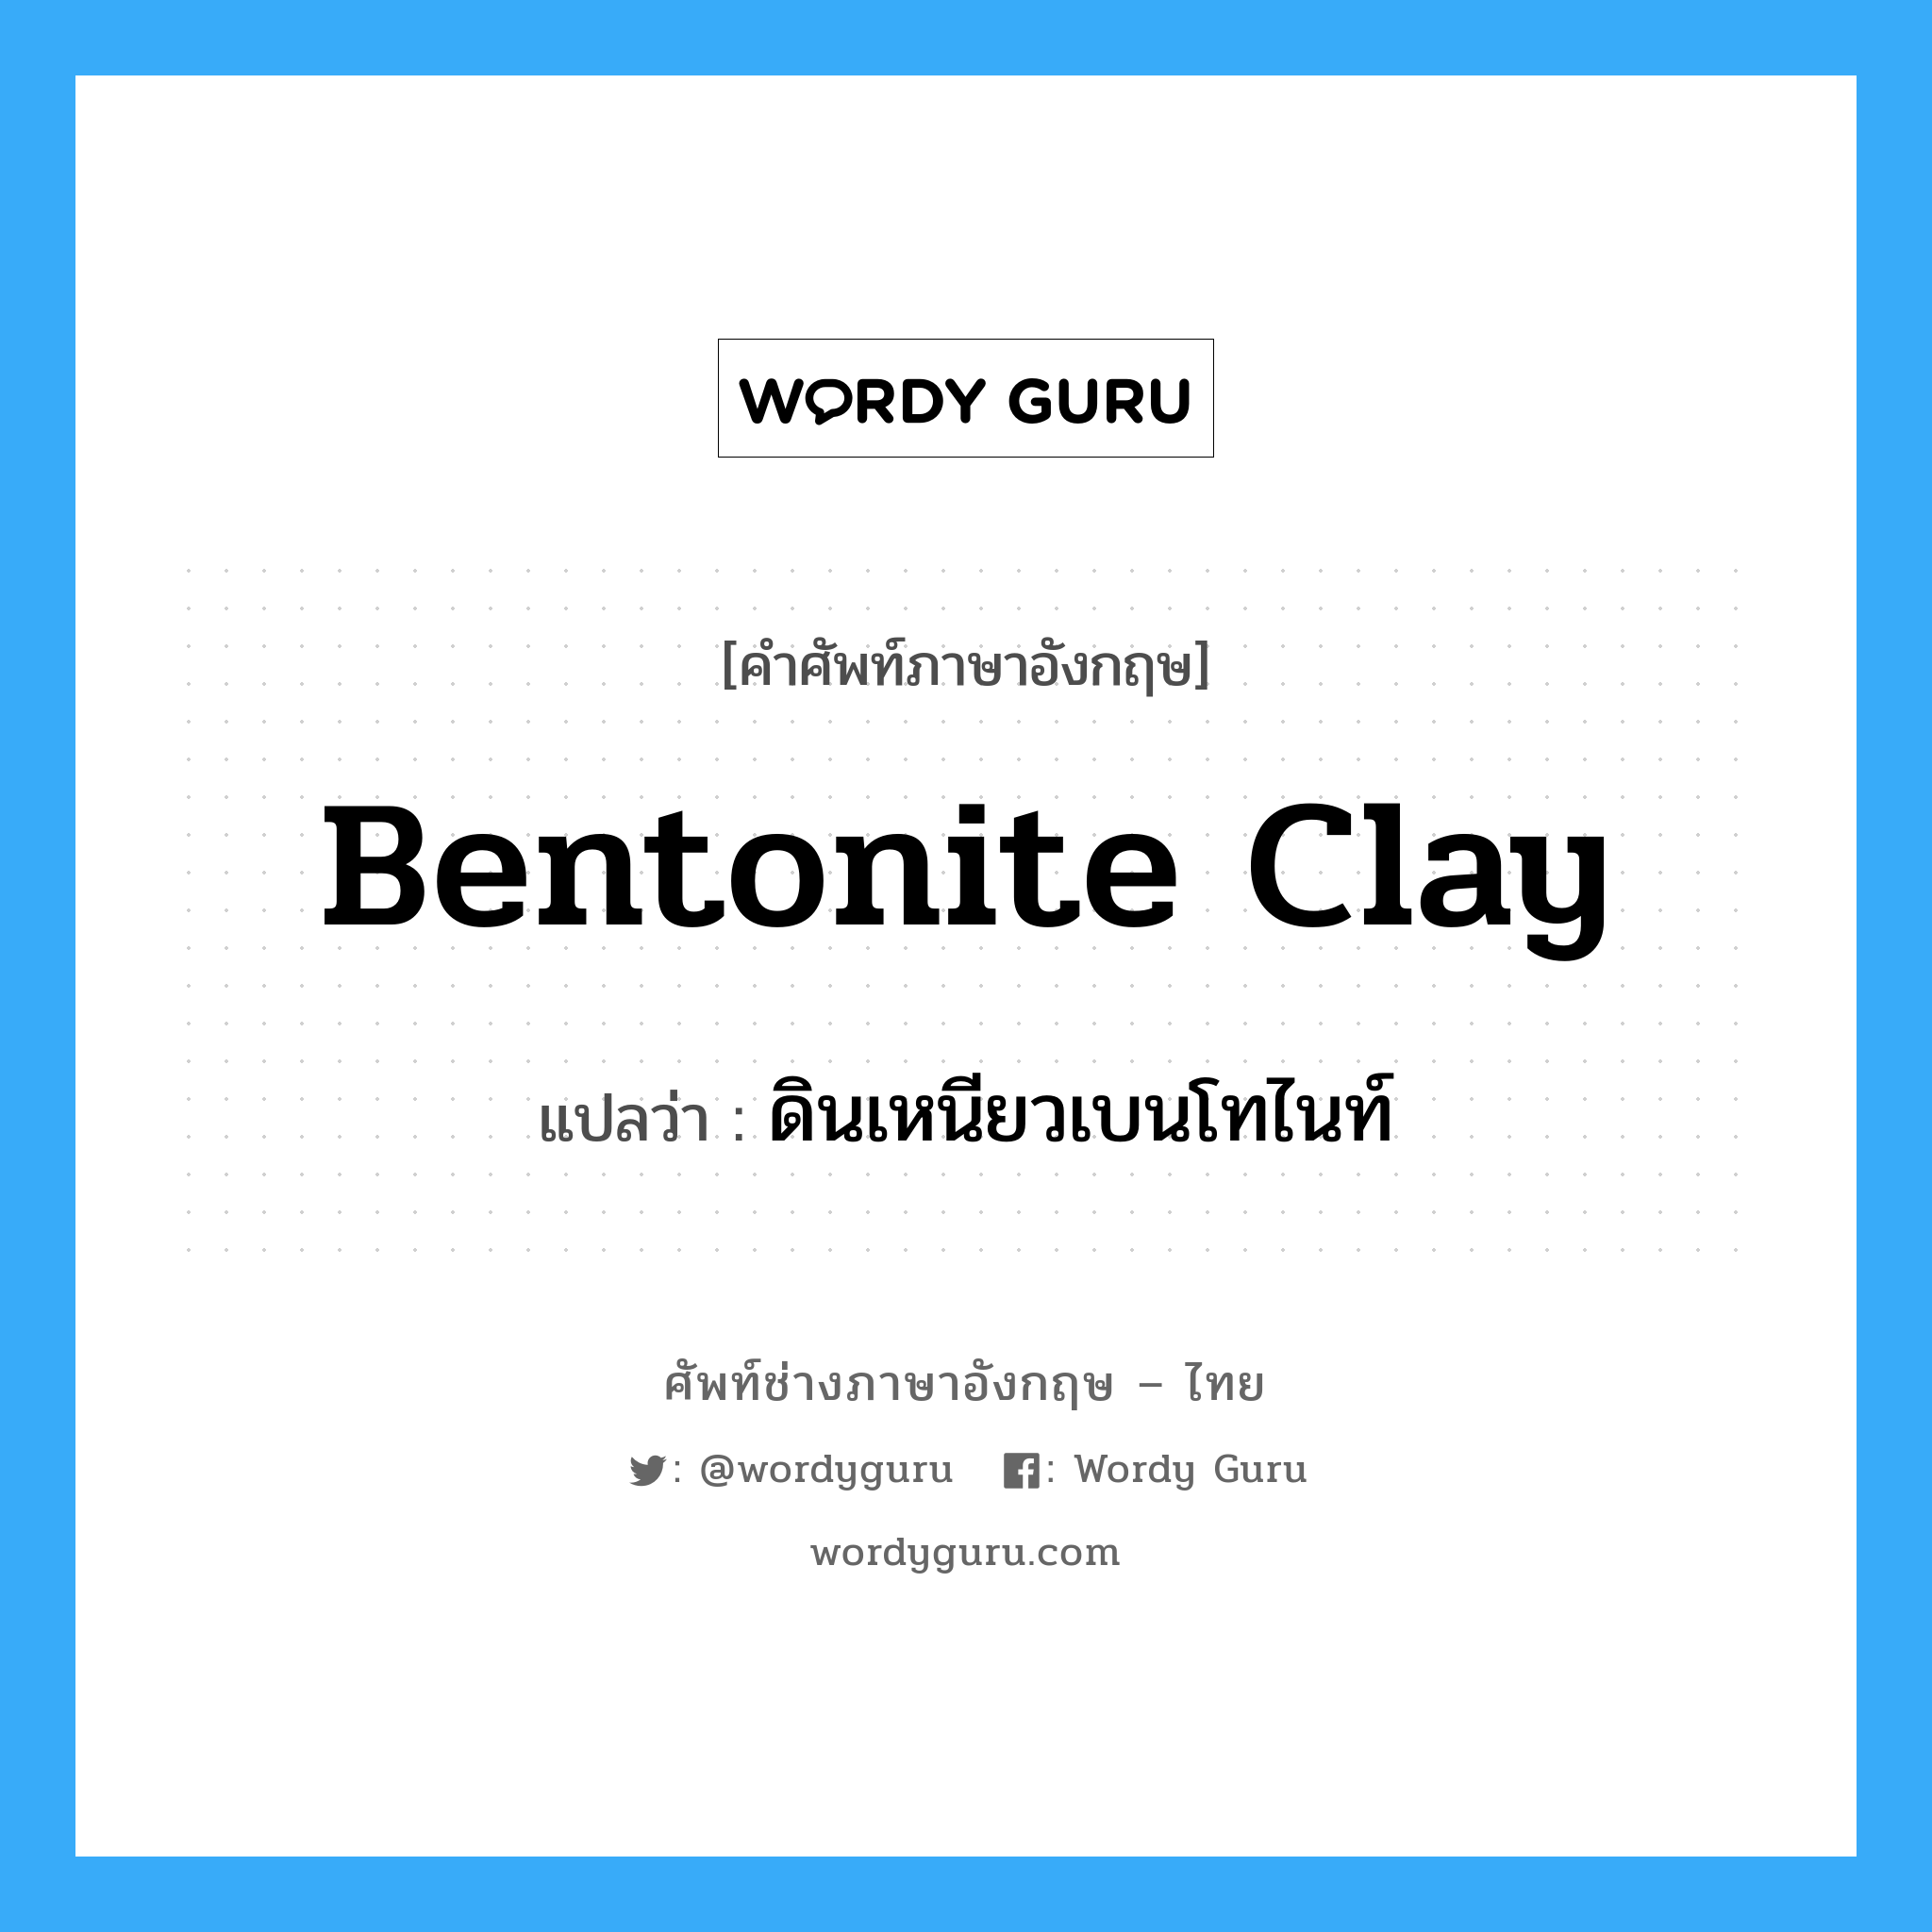 ดินเหนียวเบนโทไนท์ ภาษาอังกฤษ?, คำศัพท์ช่างภาษาอังกฤษ - ไทย ดินเหนียวเบนโทไนท์ คำศัพท์ภาษาอังกฤษ ดินเหนียวเบนโทไนท์ แปลว่า bentonite clay